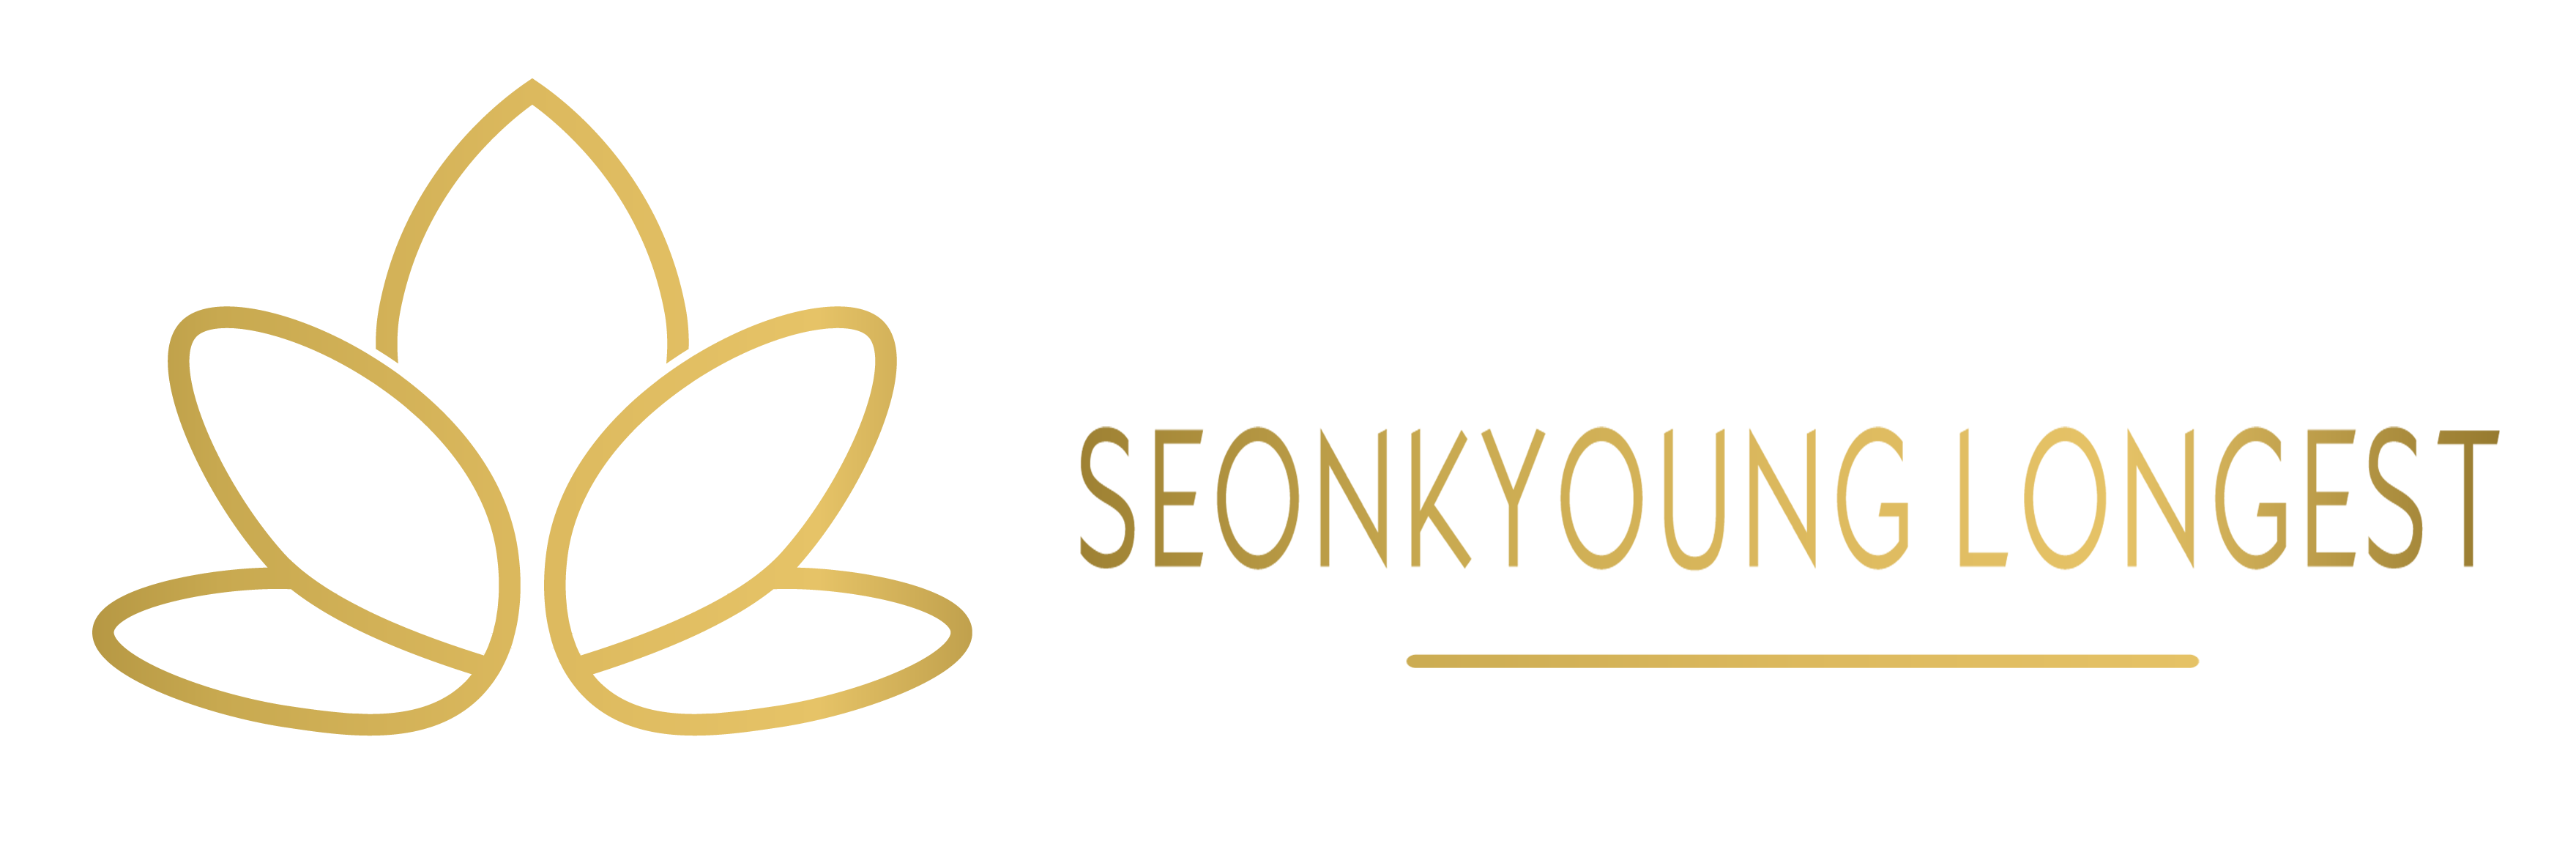 Seonkyoung Longest